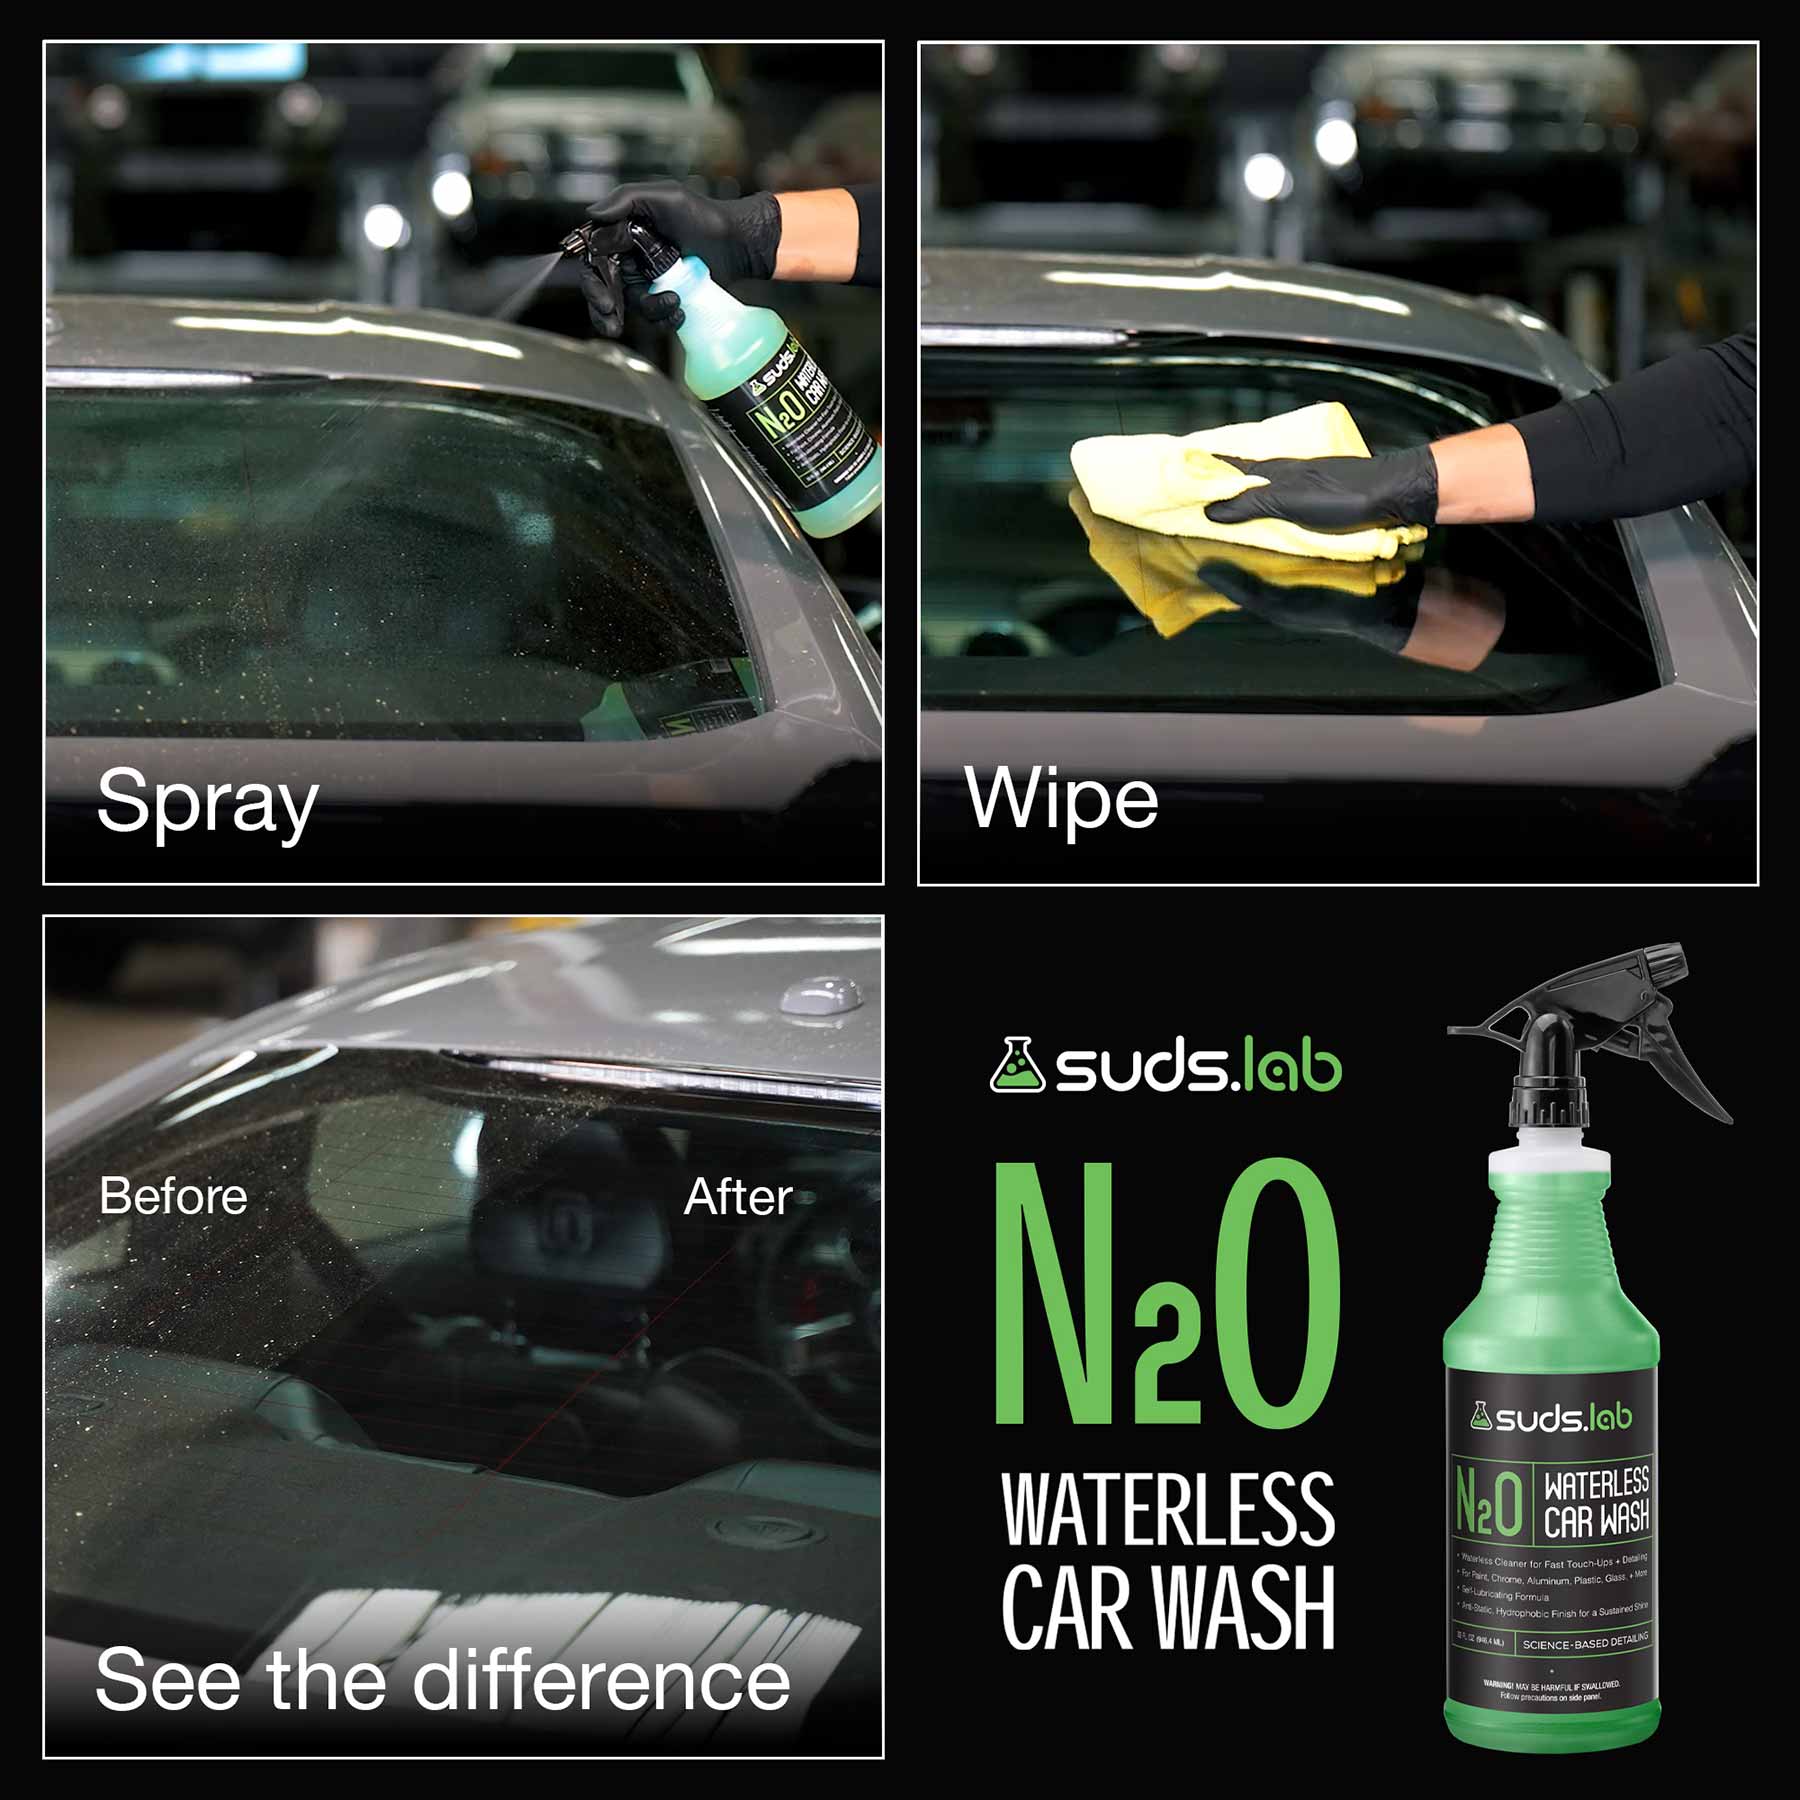 N20 Waterless Car Wash – SudsLab